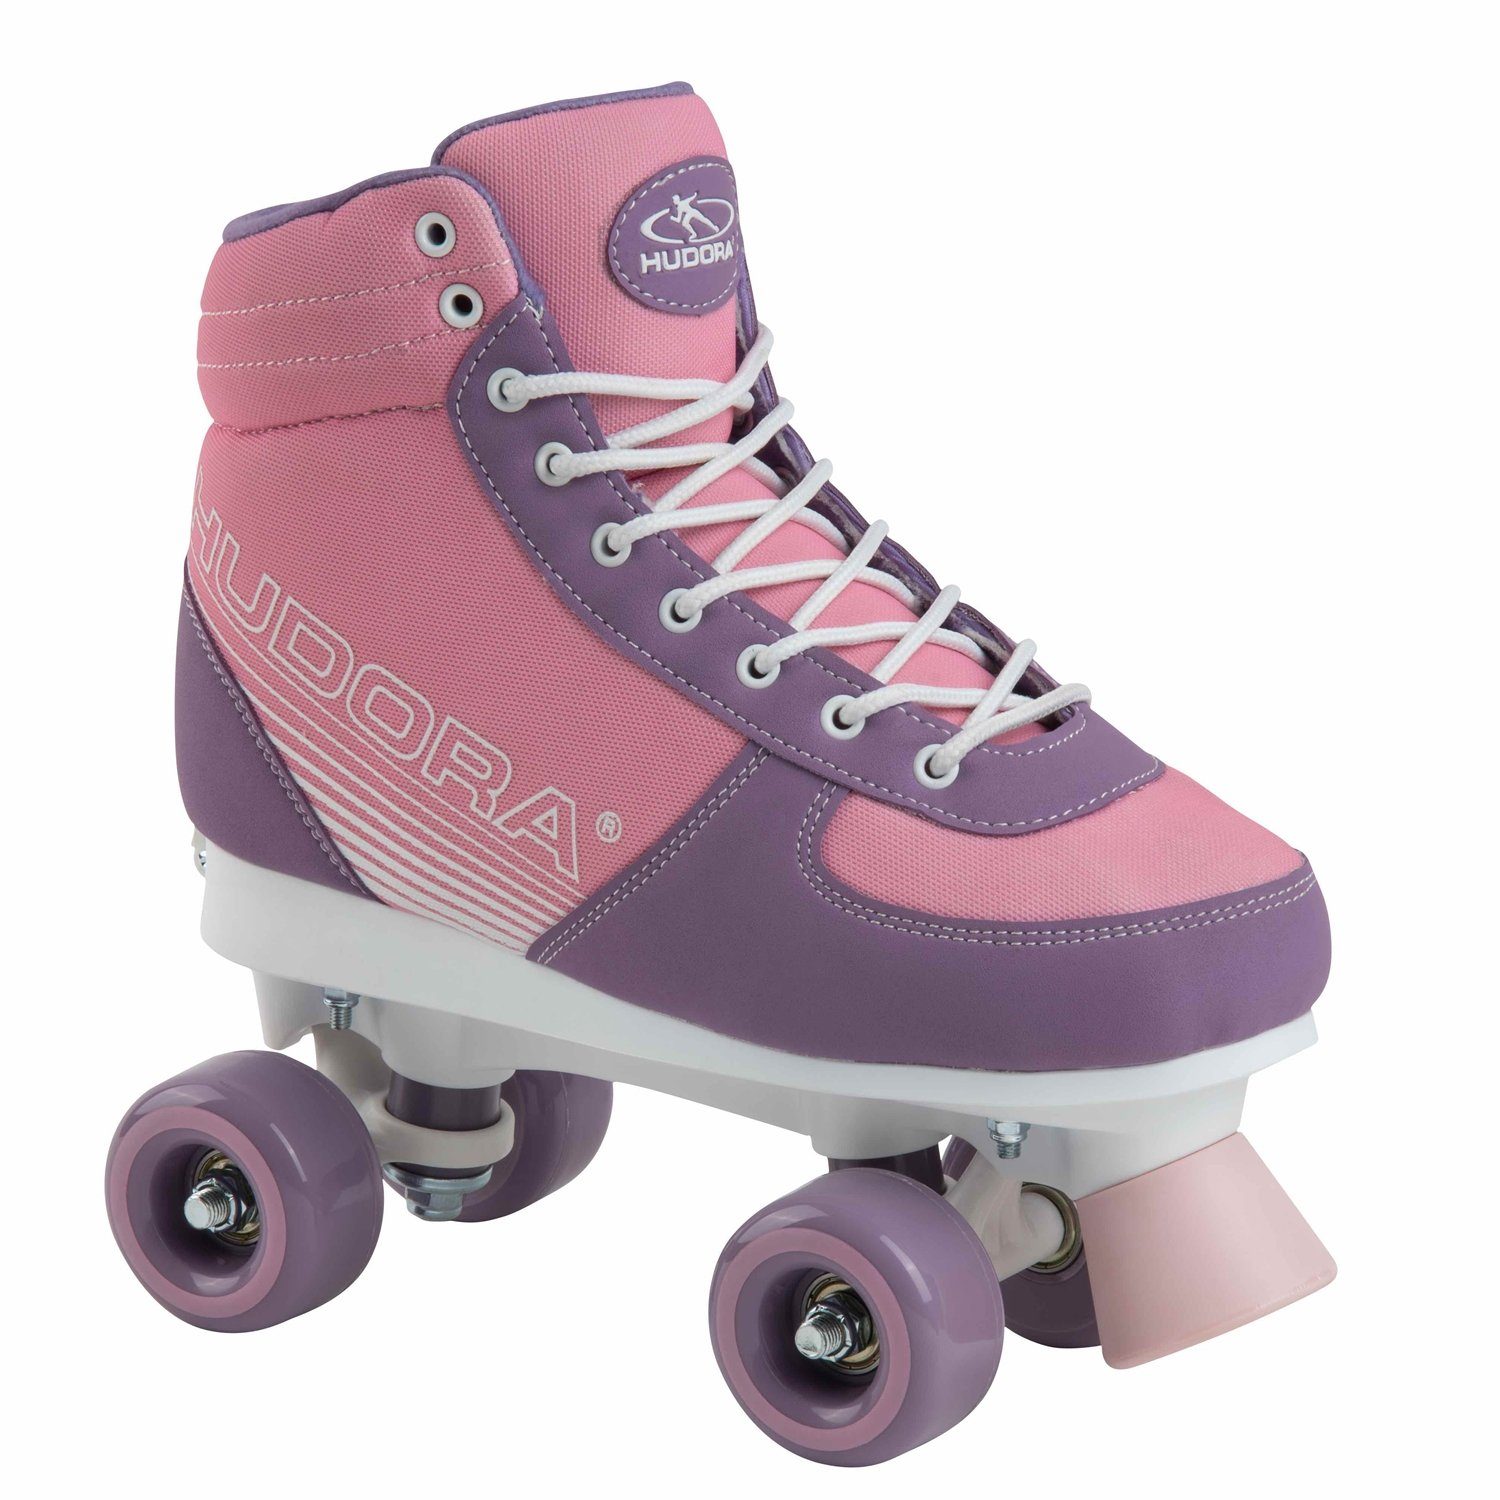 Hudora Scooter 13126 Inline Skates Advanced pink Blush Gr:35-38